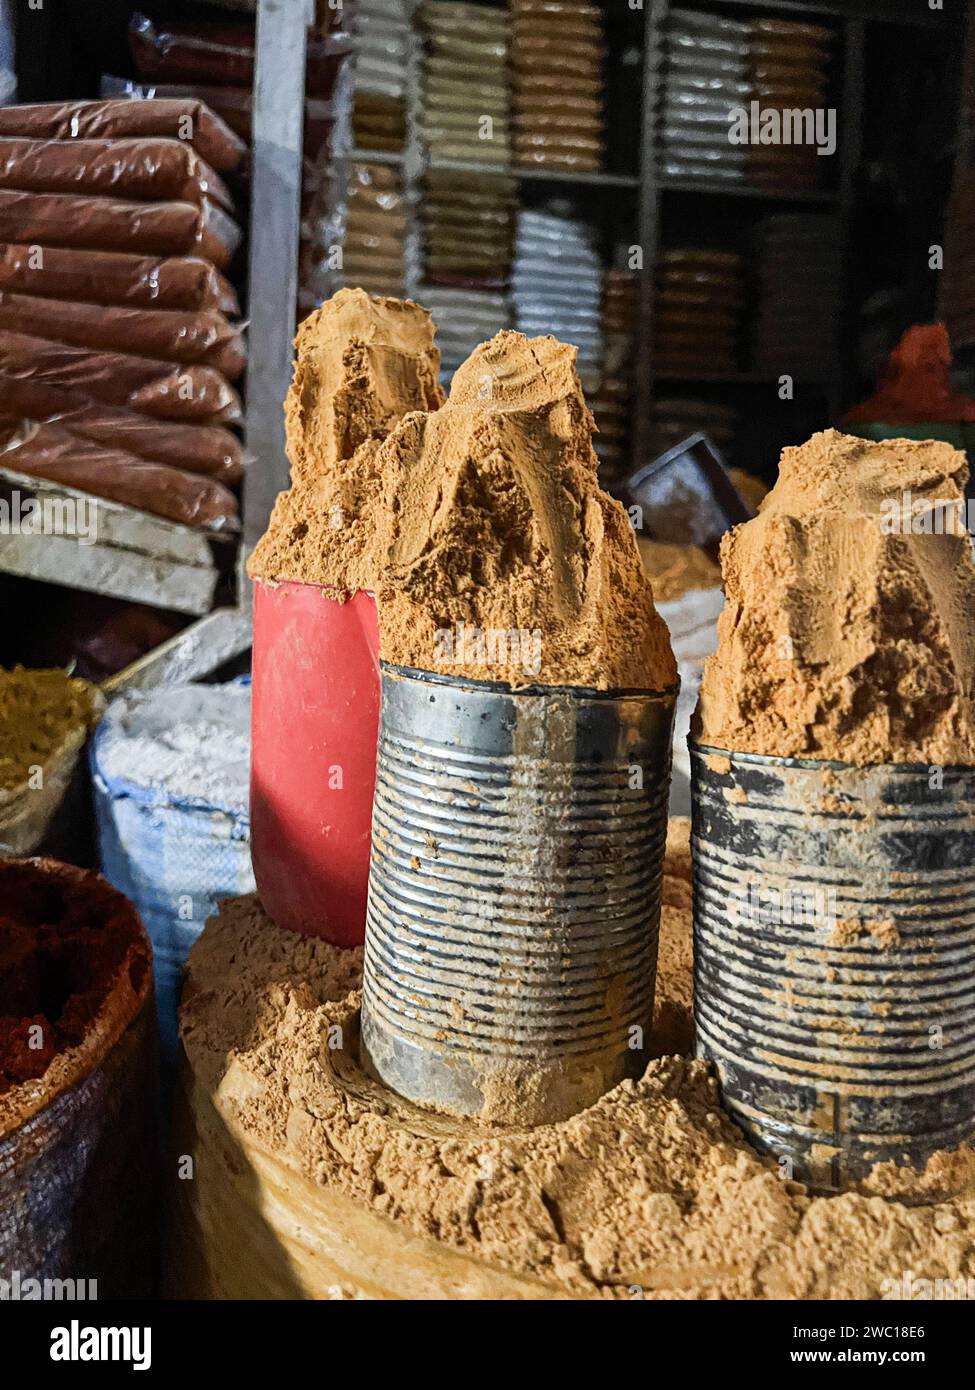 Épice en vrac dans une vieille boîte en acier sur un marché à addis abbeba, Ethiopie. Banque D'Images